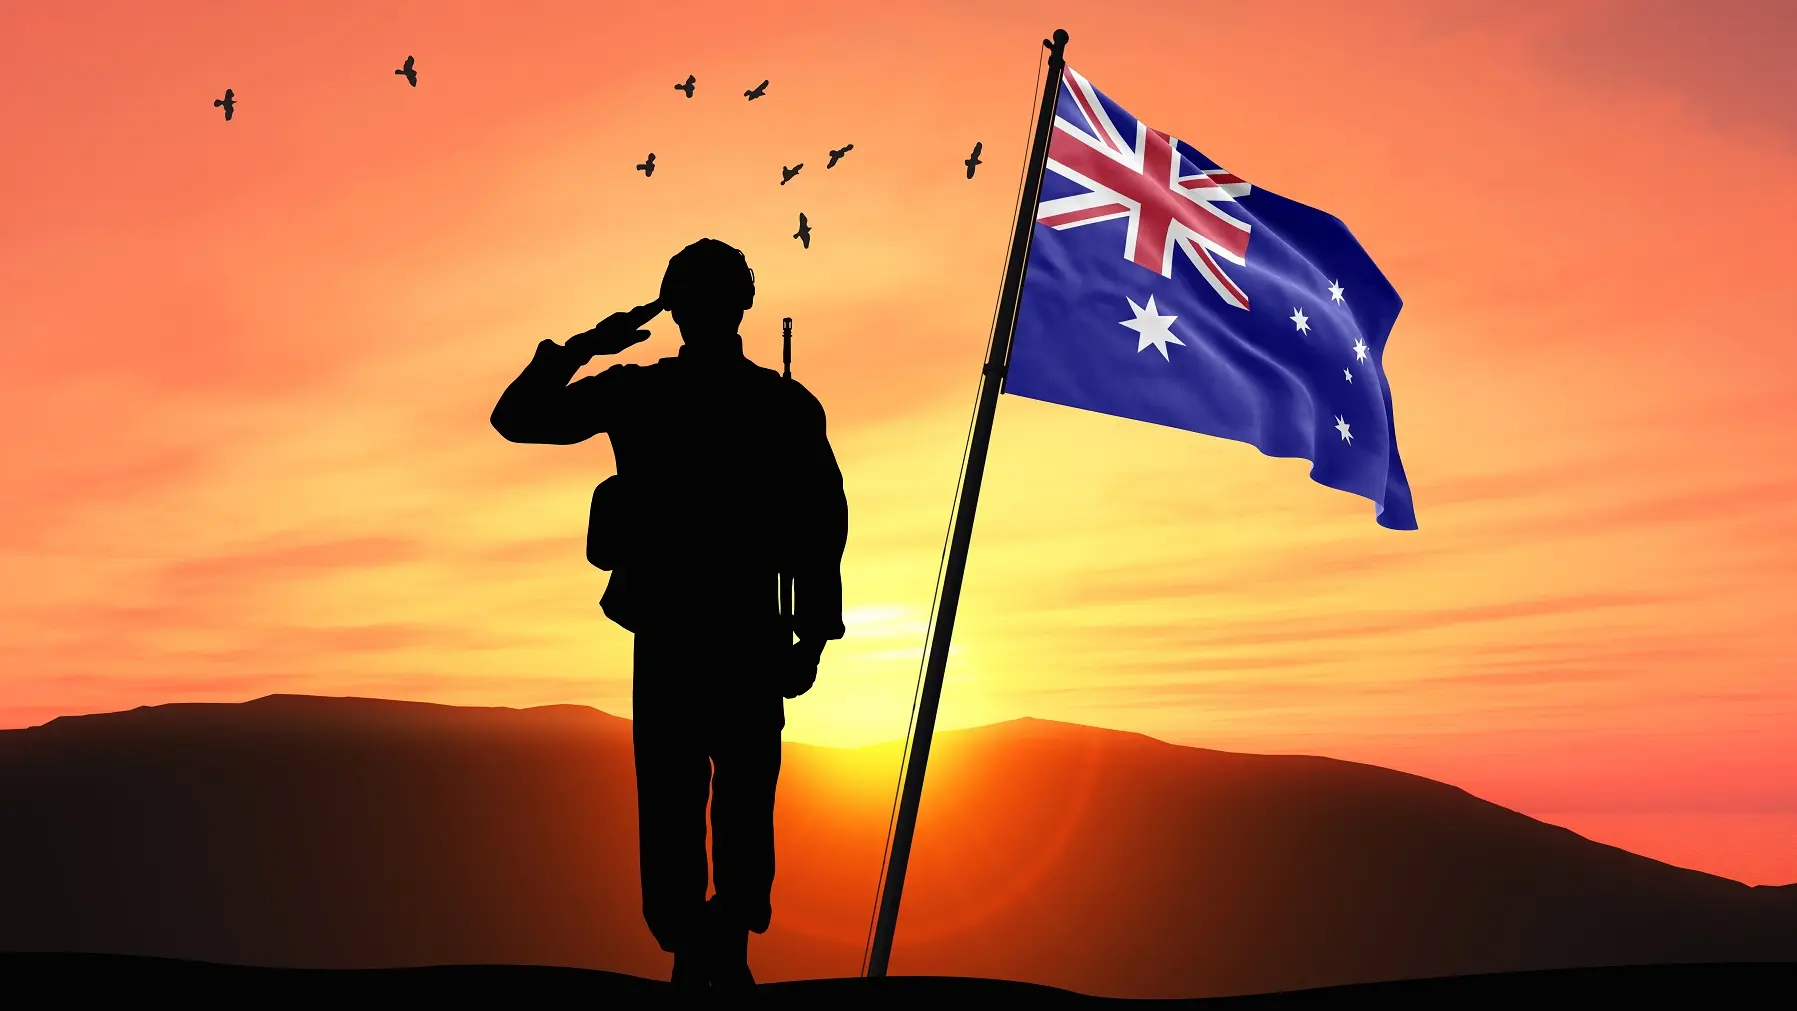 australijska vojska, vojska australije, australijski vojnik vojnici - shutterstock-665ee77f89afd.webp